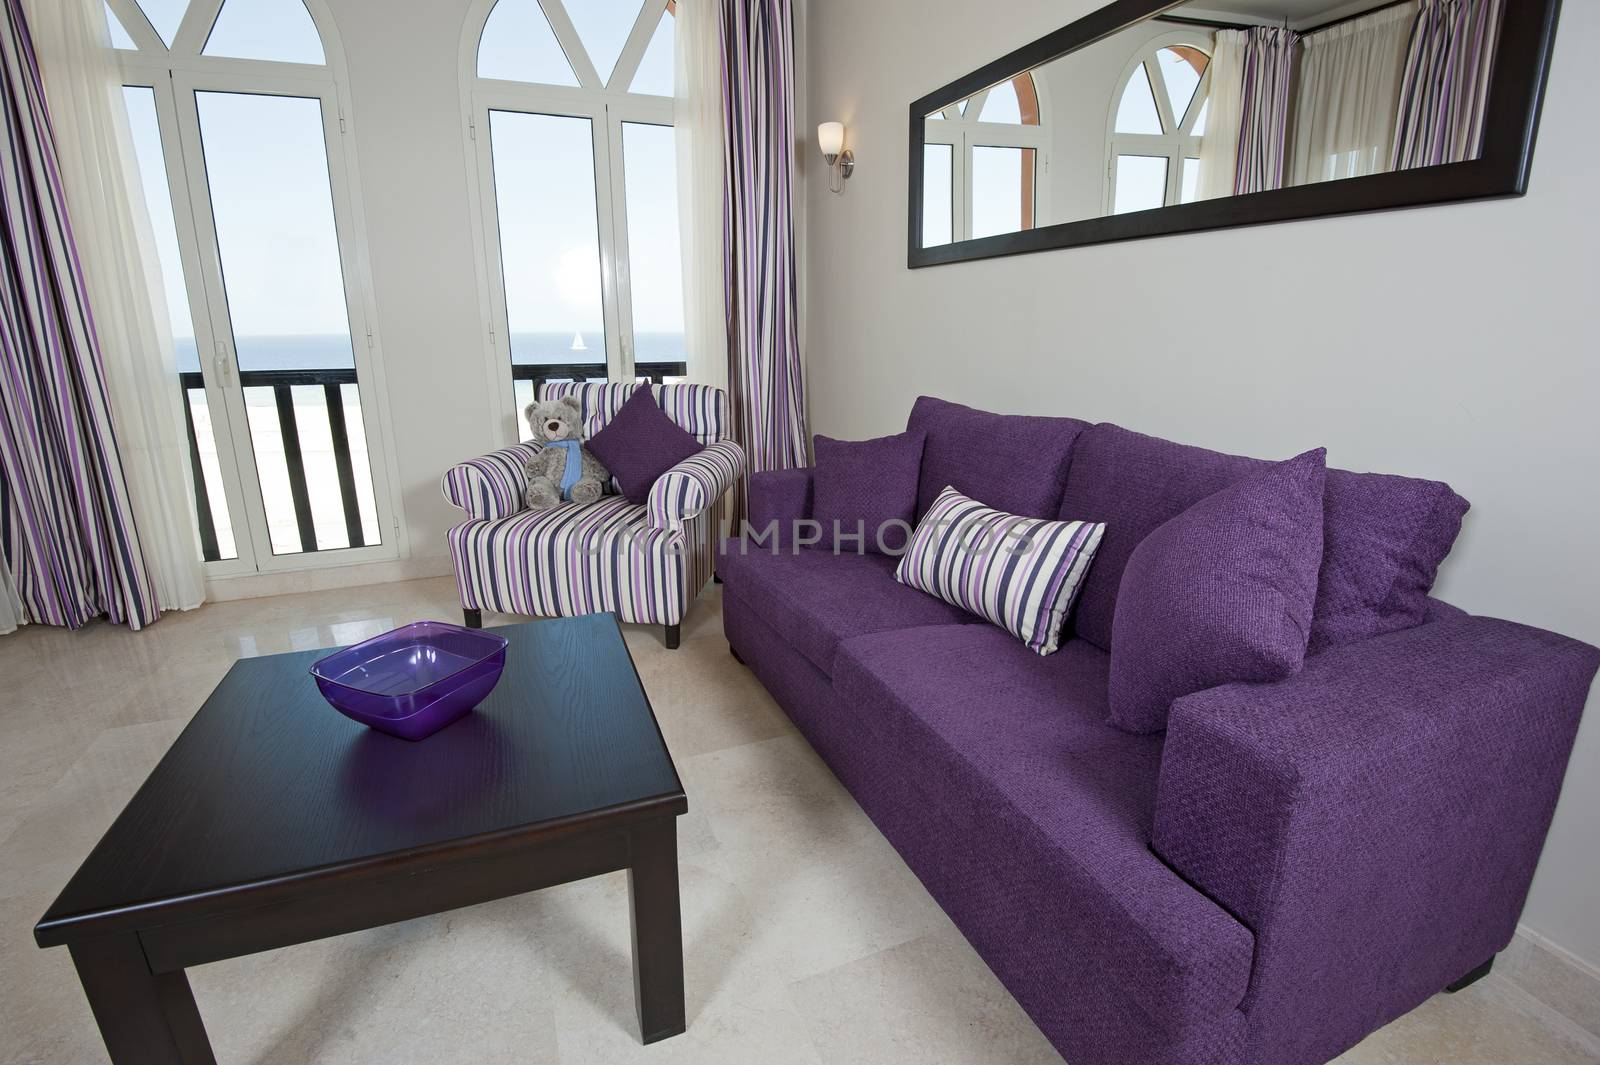 Luxury apartment interior design by paulvinten